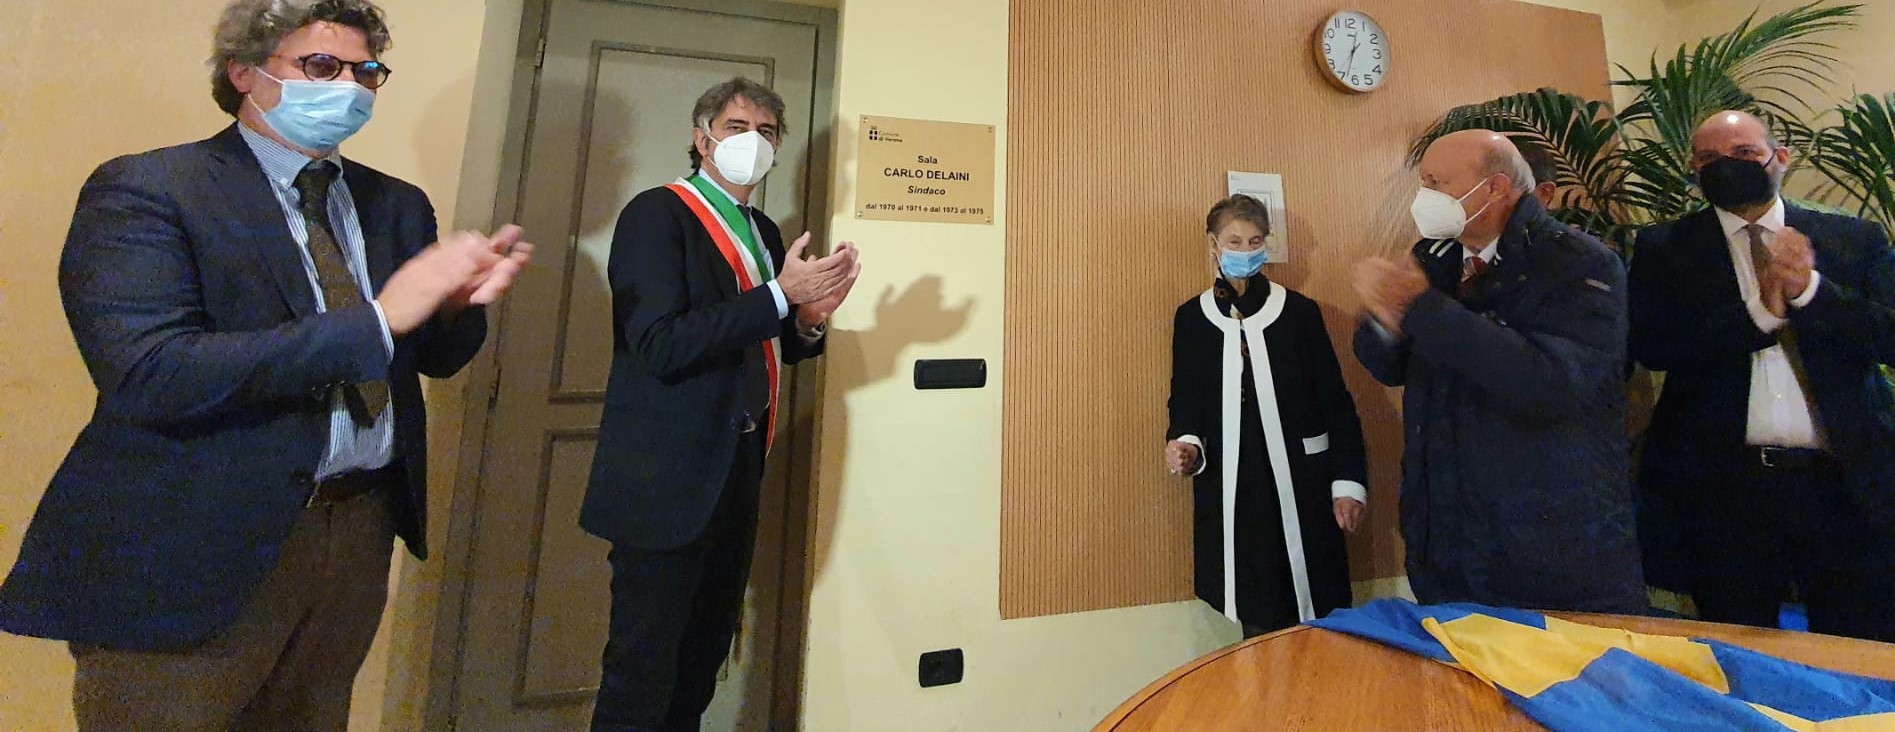 Il Comune dedica la sala stampa a Carlo Delaini, sindaco protagonista della rinascita di Verona